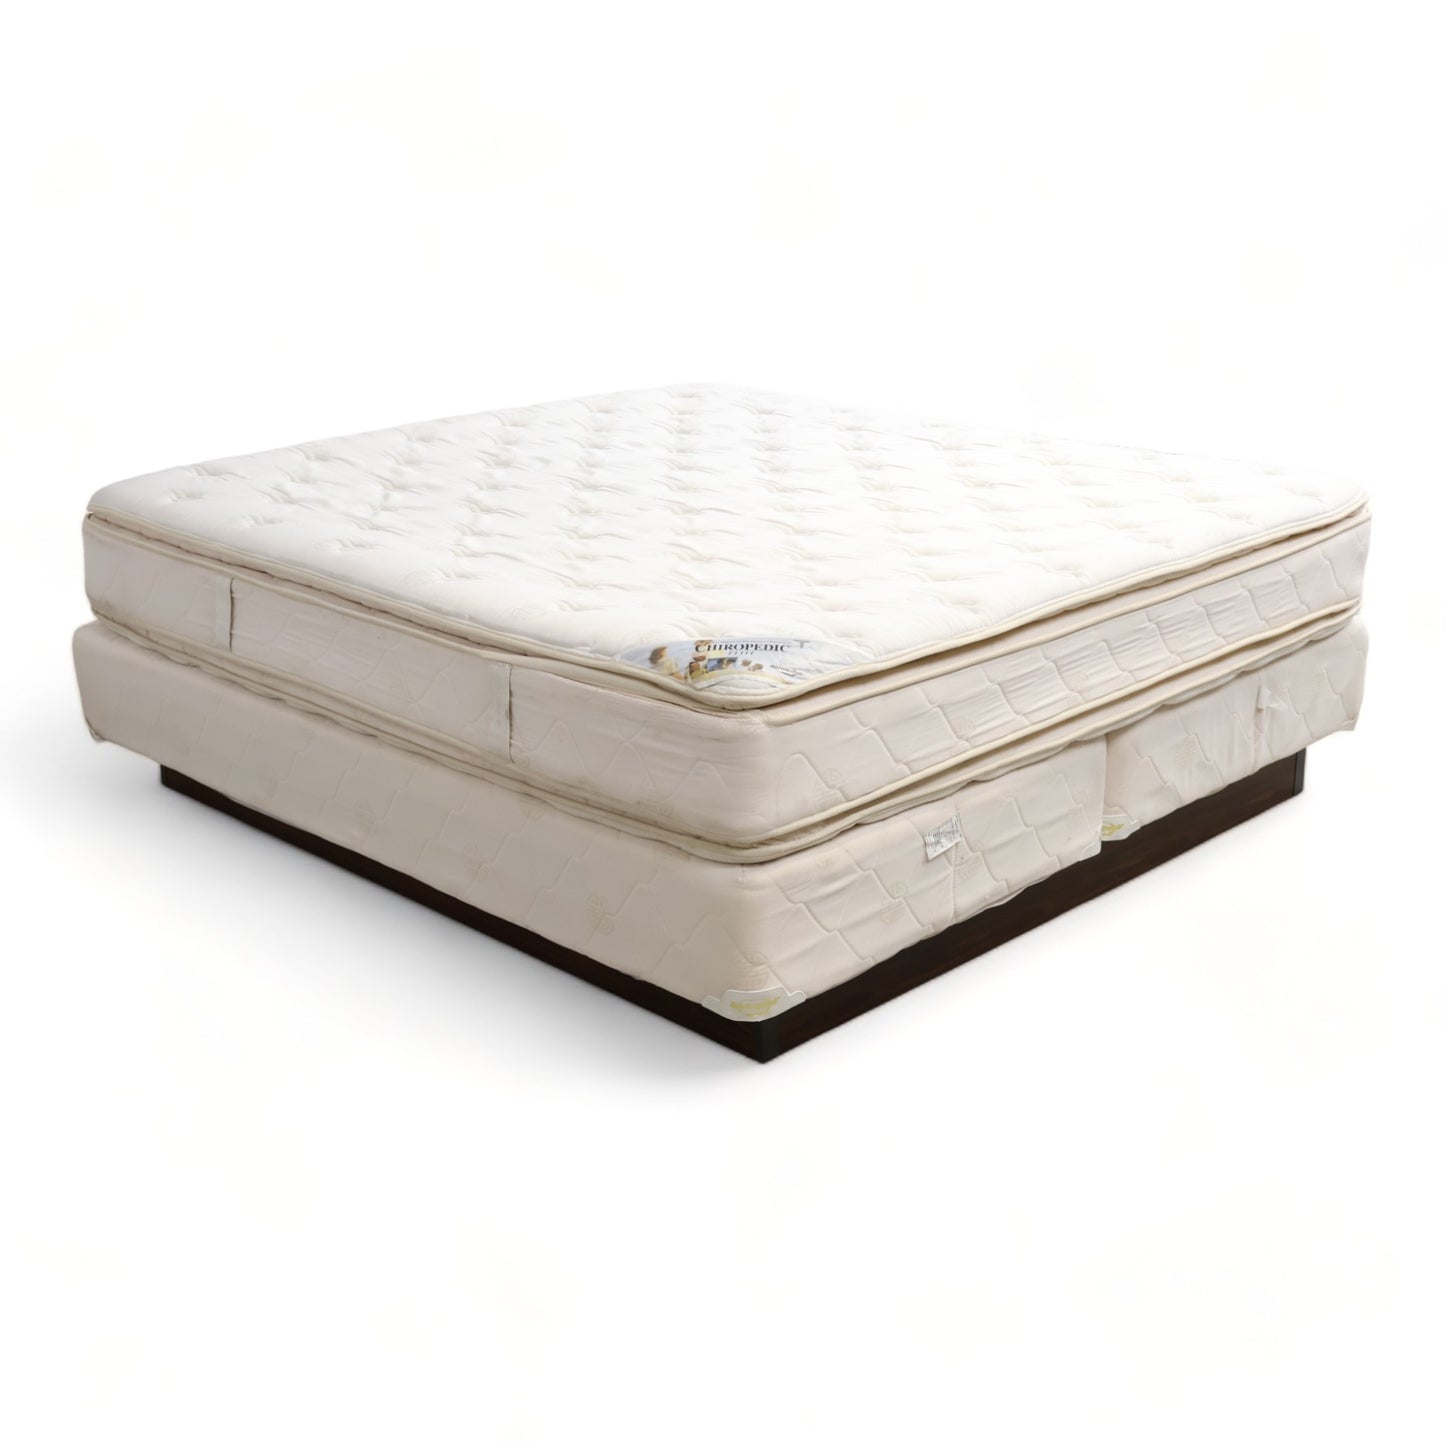 Nyrenset | Hvit og brun 200x190 seng